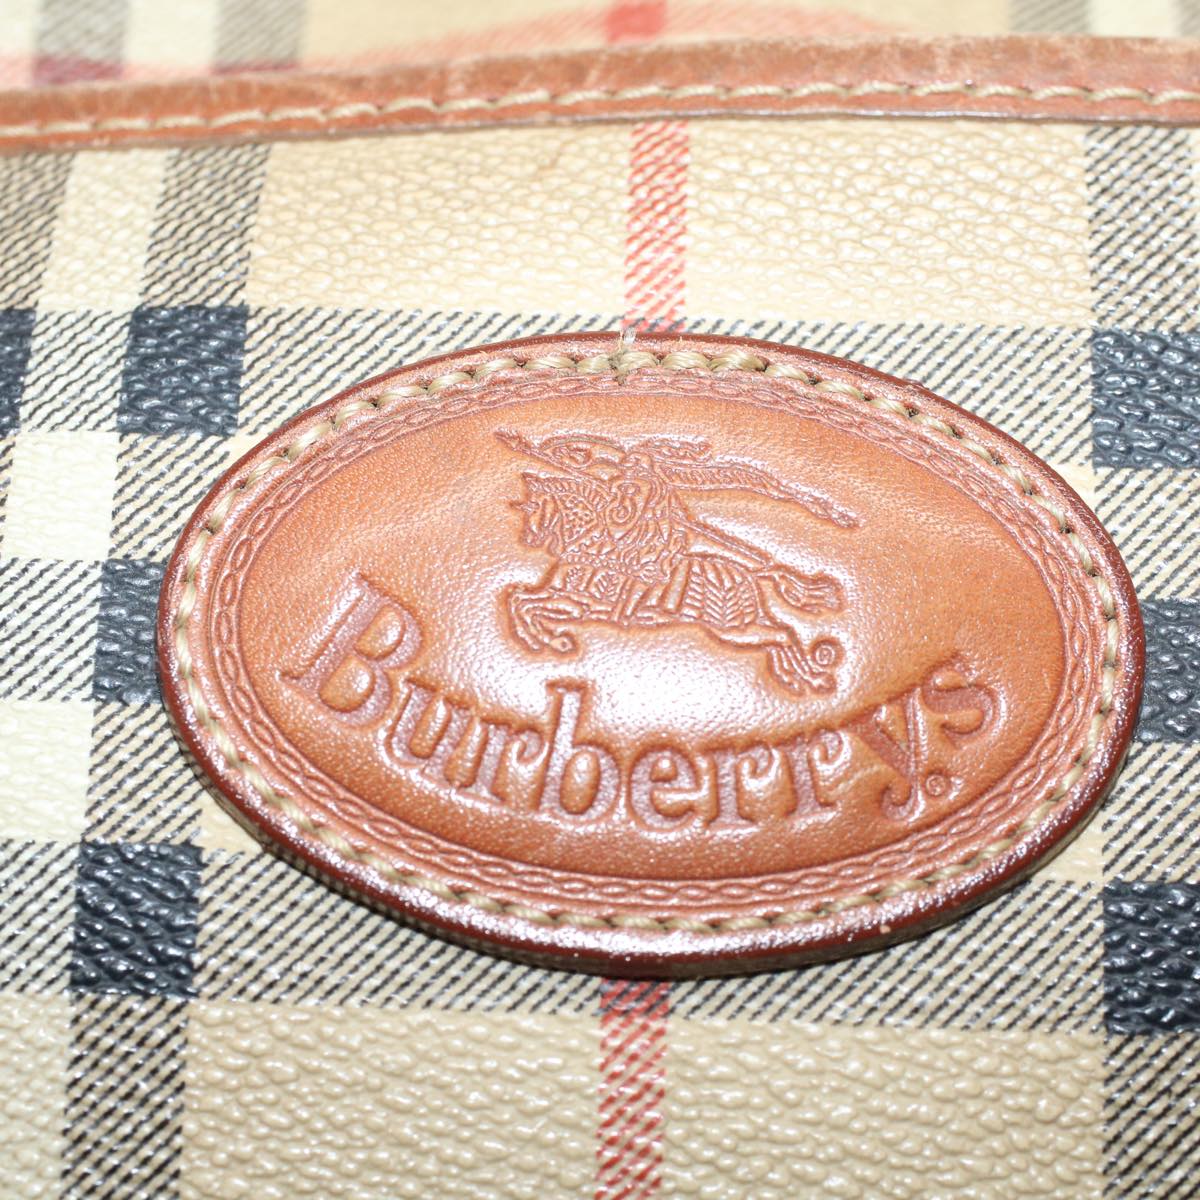 Burberrys Nova Check Shoulder Bag PVC Leather Beige Auth yk9318